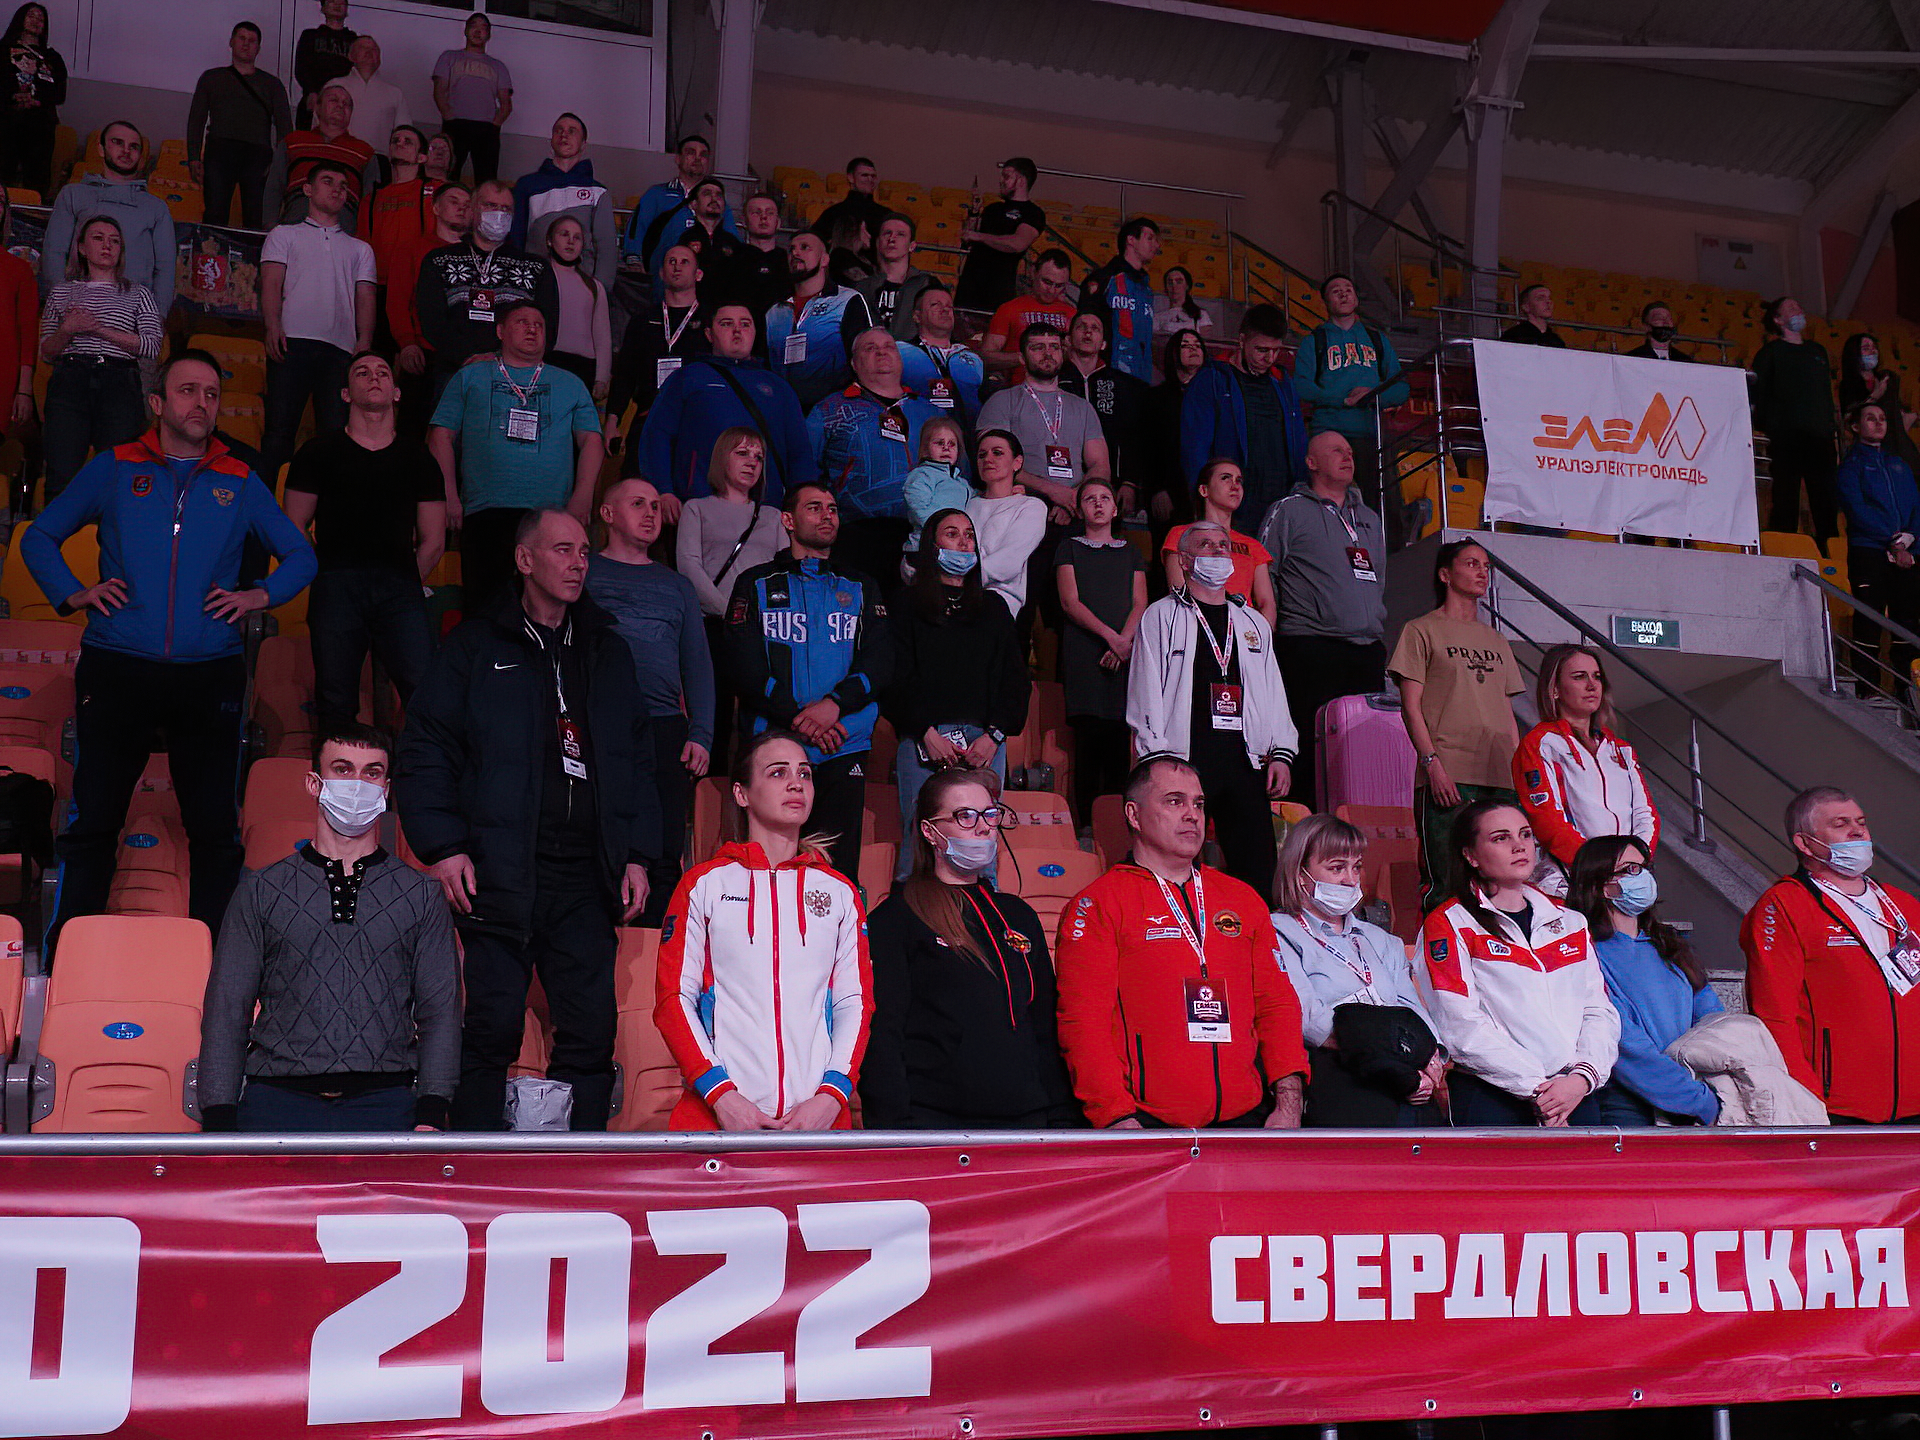 Станислав Скрябин и Антон Брачев поборются за титул чемпионов мира